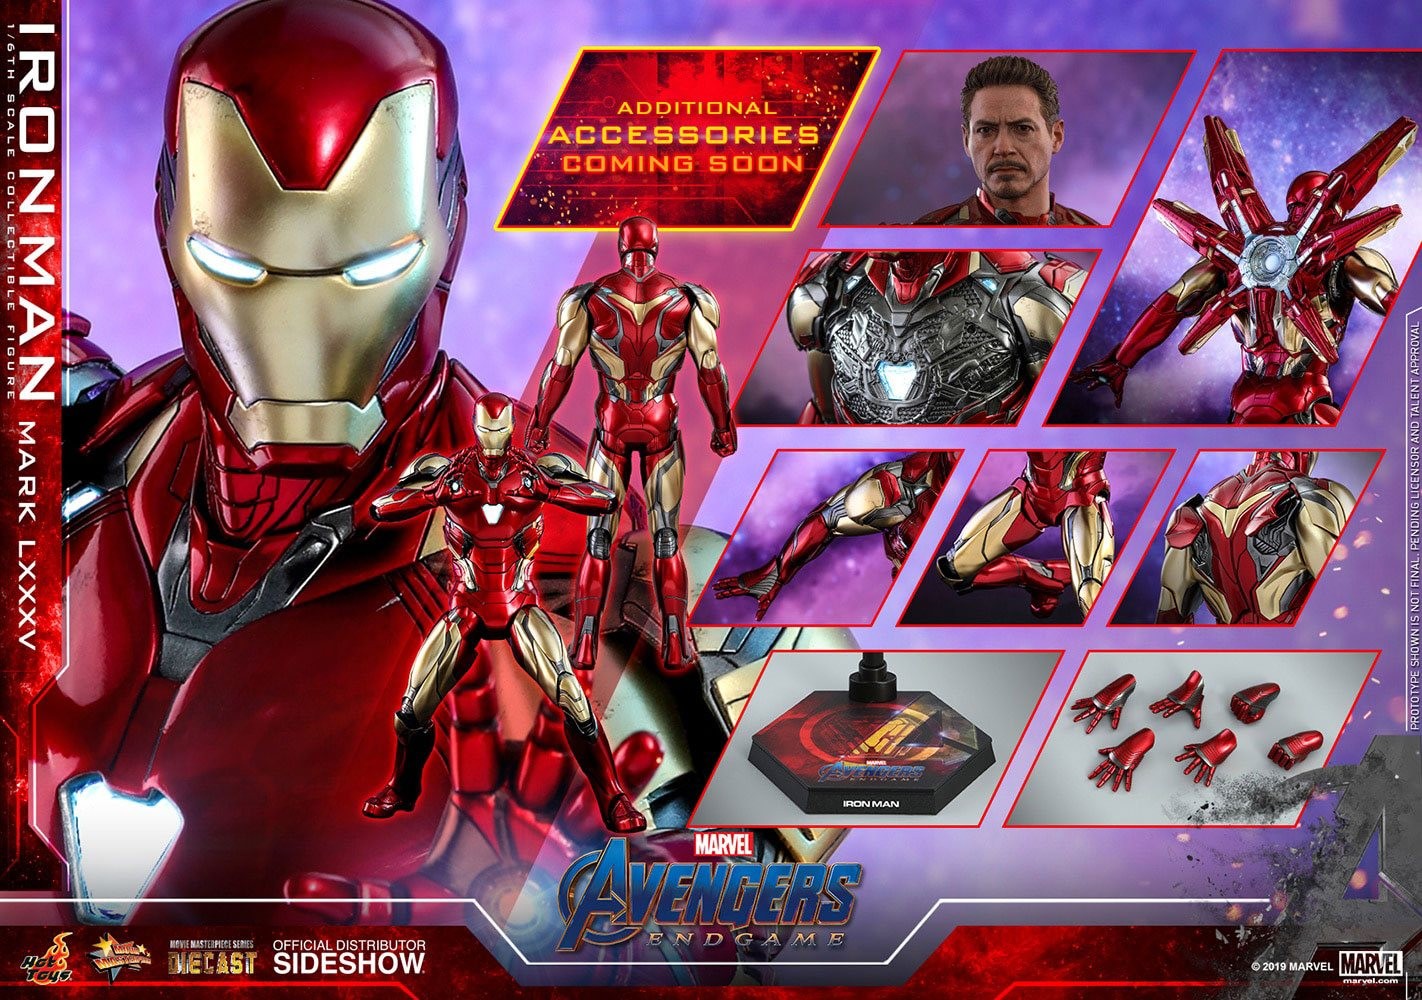 Vengadores: Endgame Figura Movie Masterpiece Series Diecast 1/6 Iron Man Mark LXXXV 32 cm Hot Toys